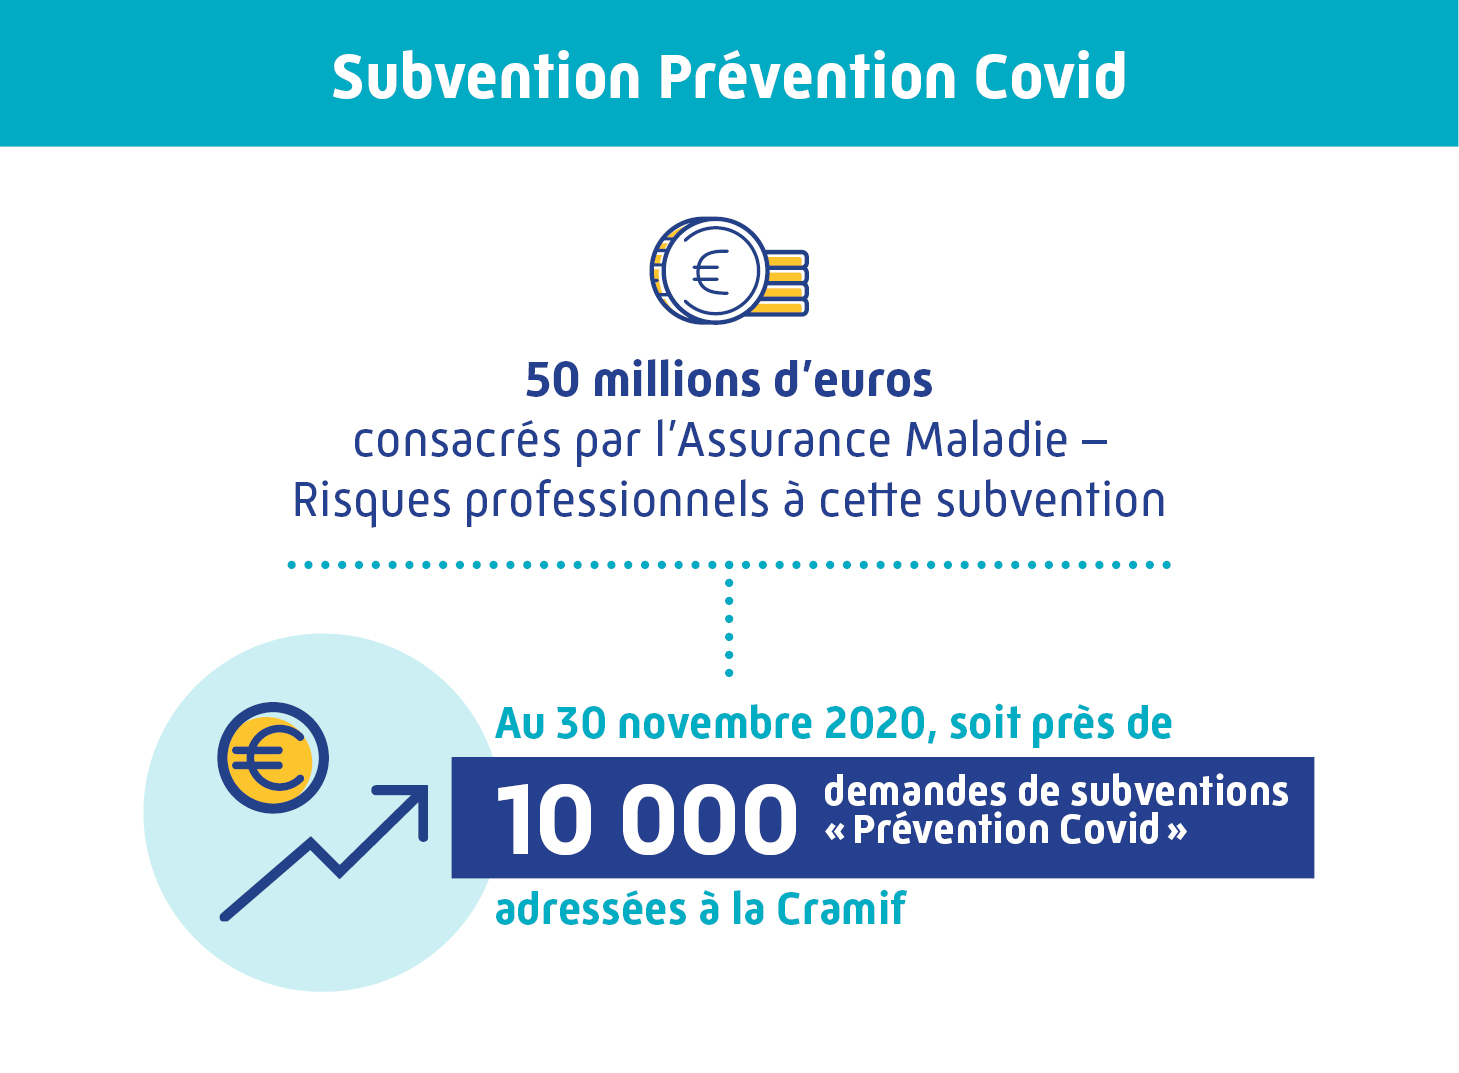 Près de  10 000 demandes de subventions Prévention Covid au 30 novembre 2020 